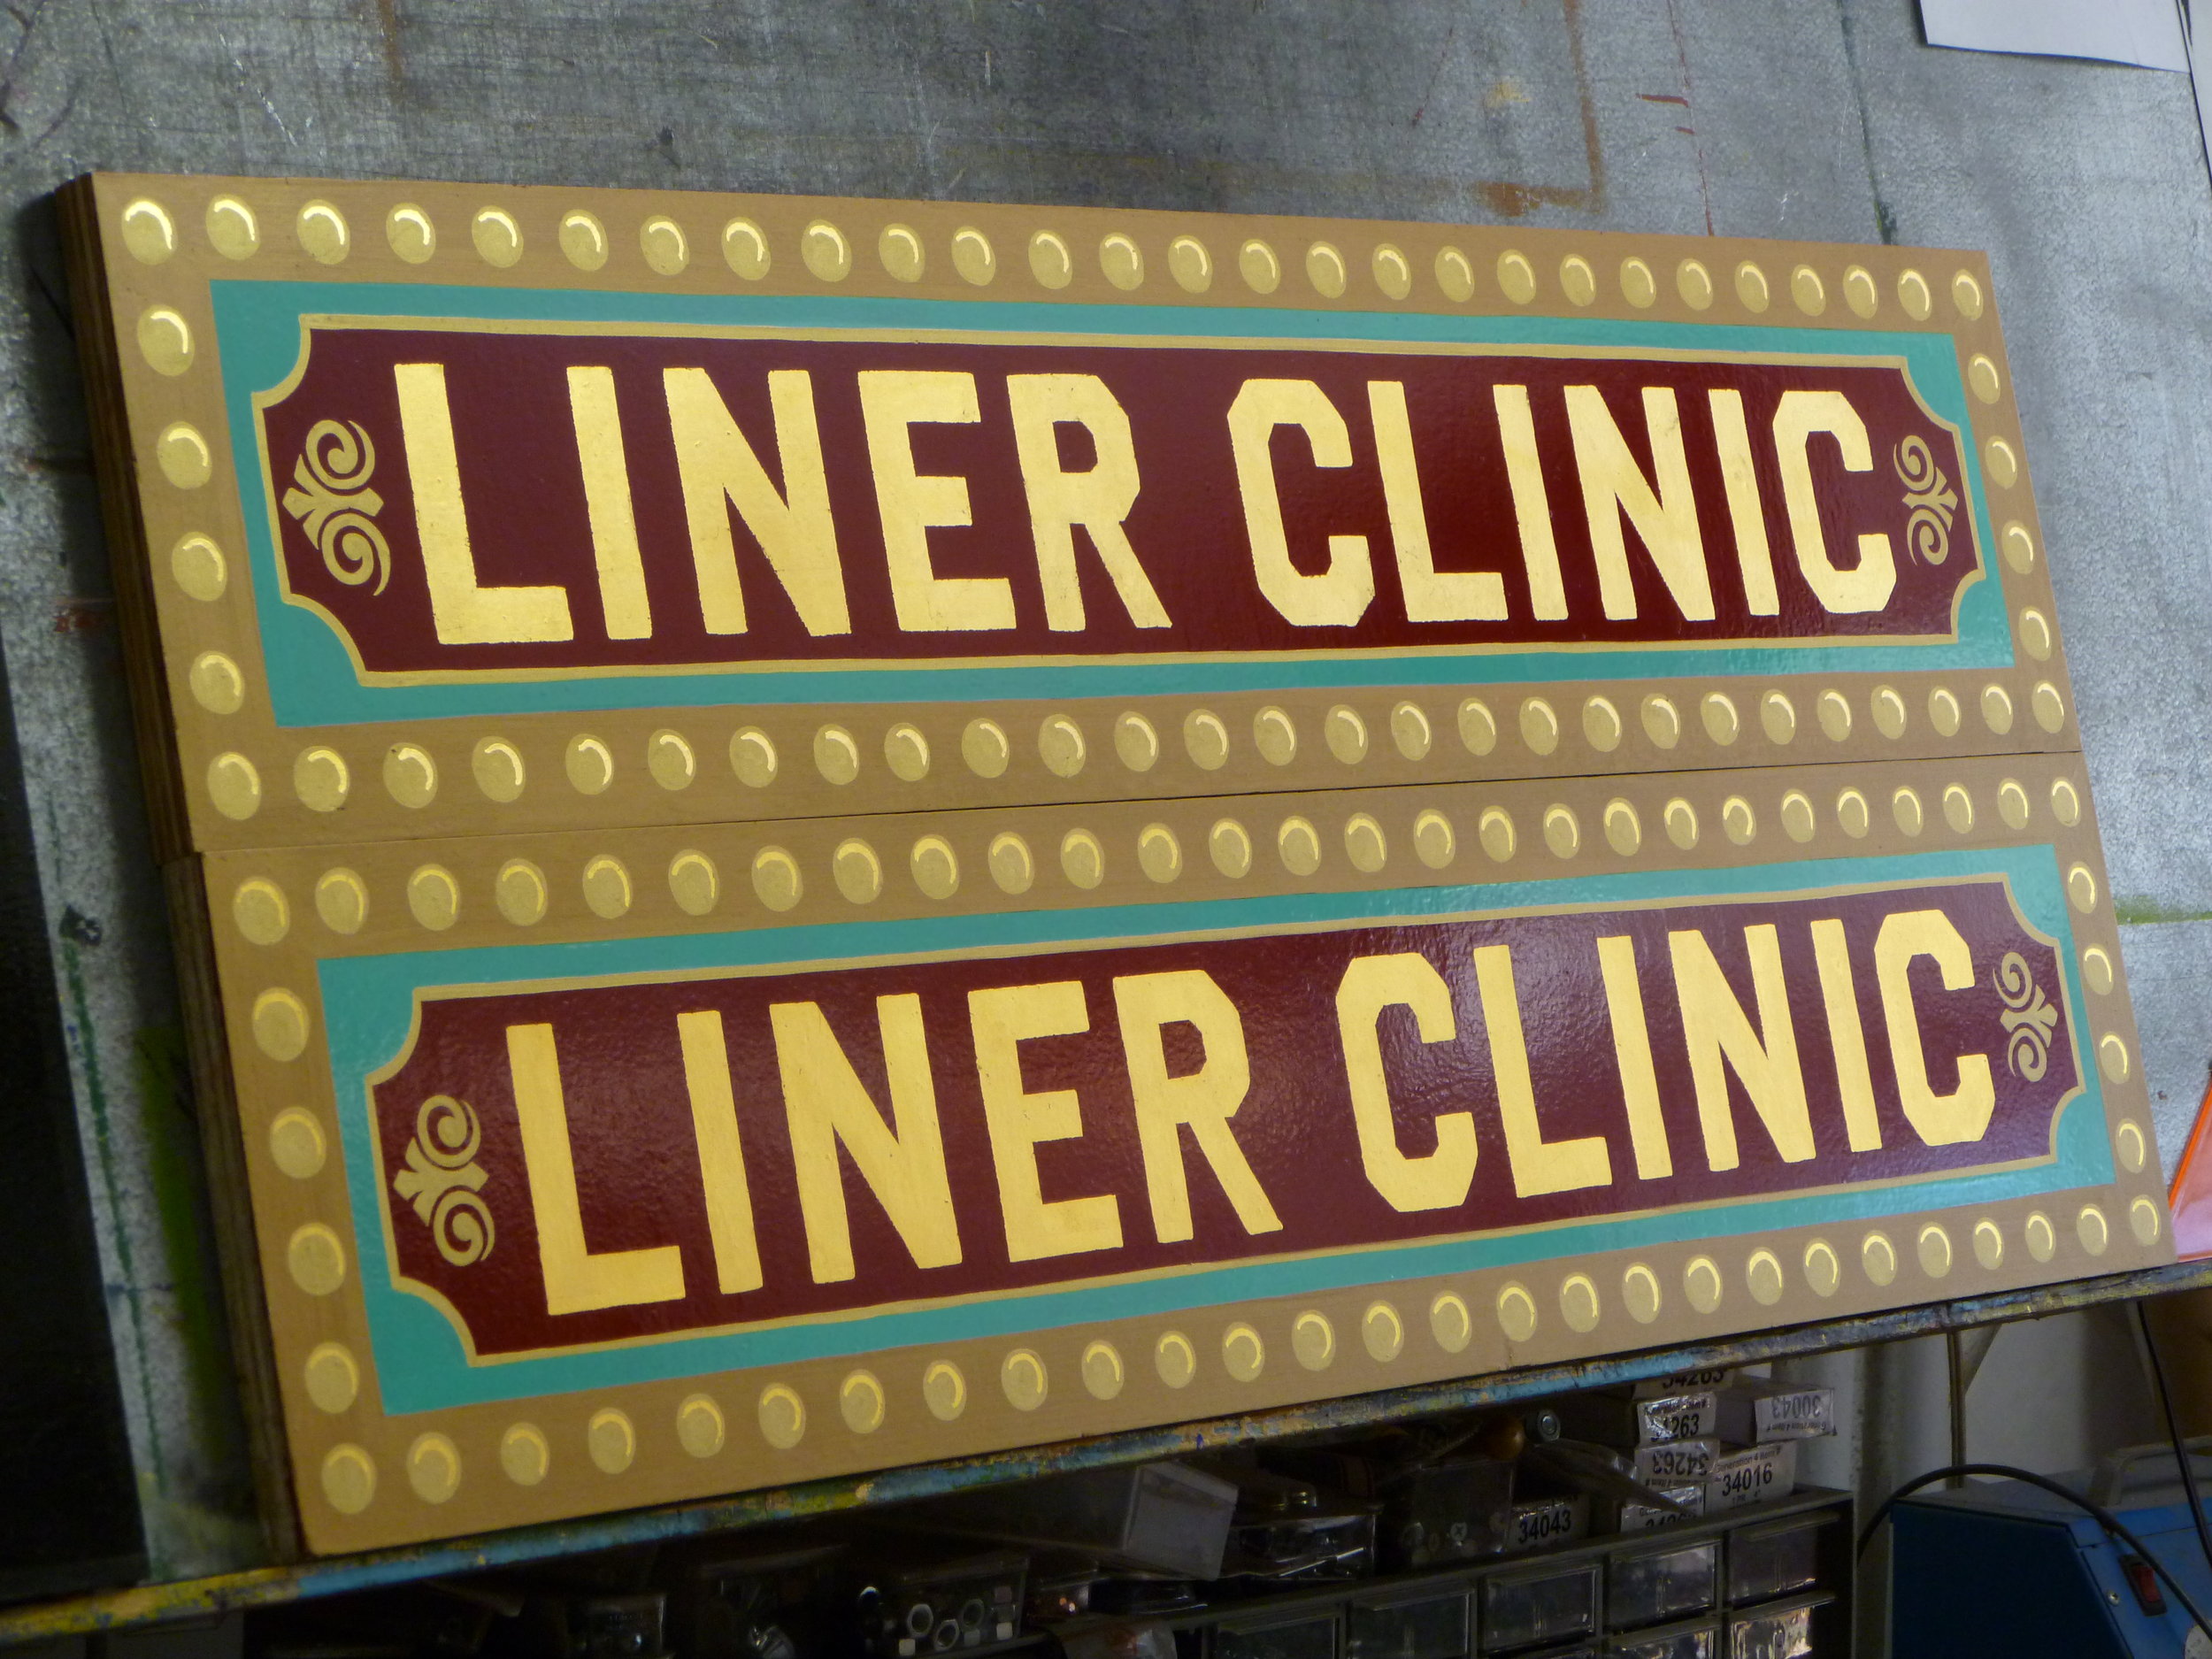 ORIG-liner-clinic_5006169607_o.jpg